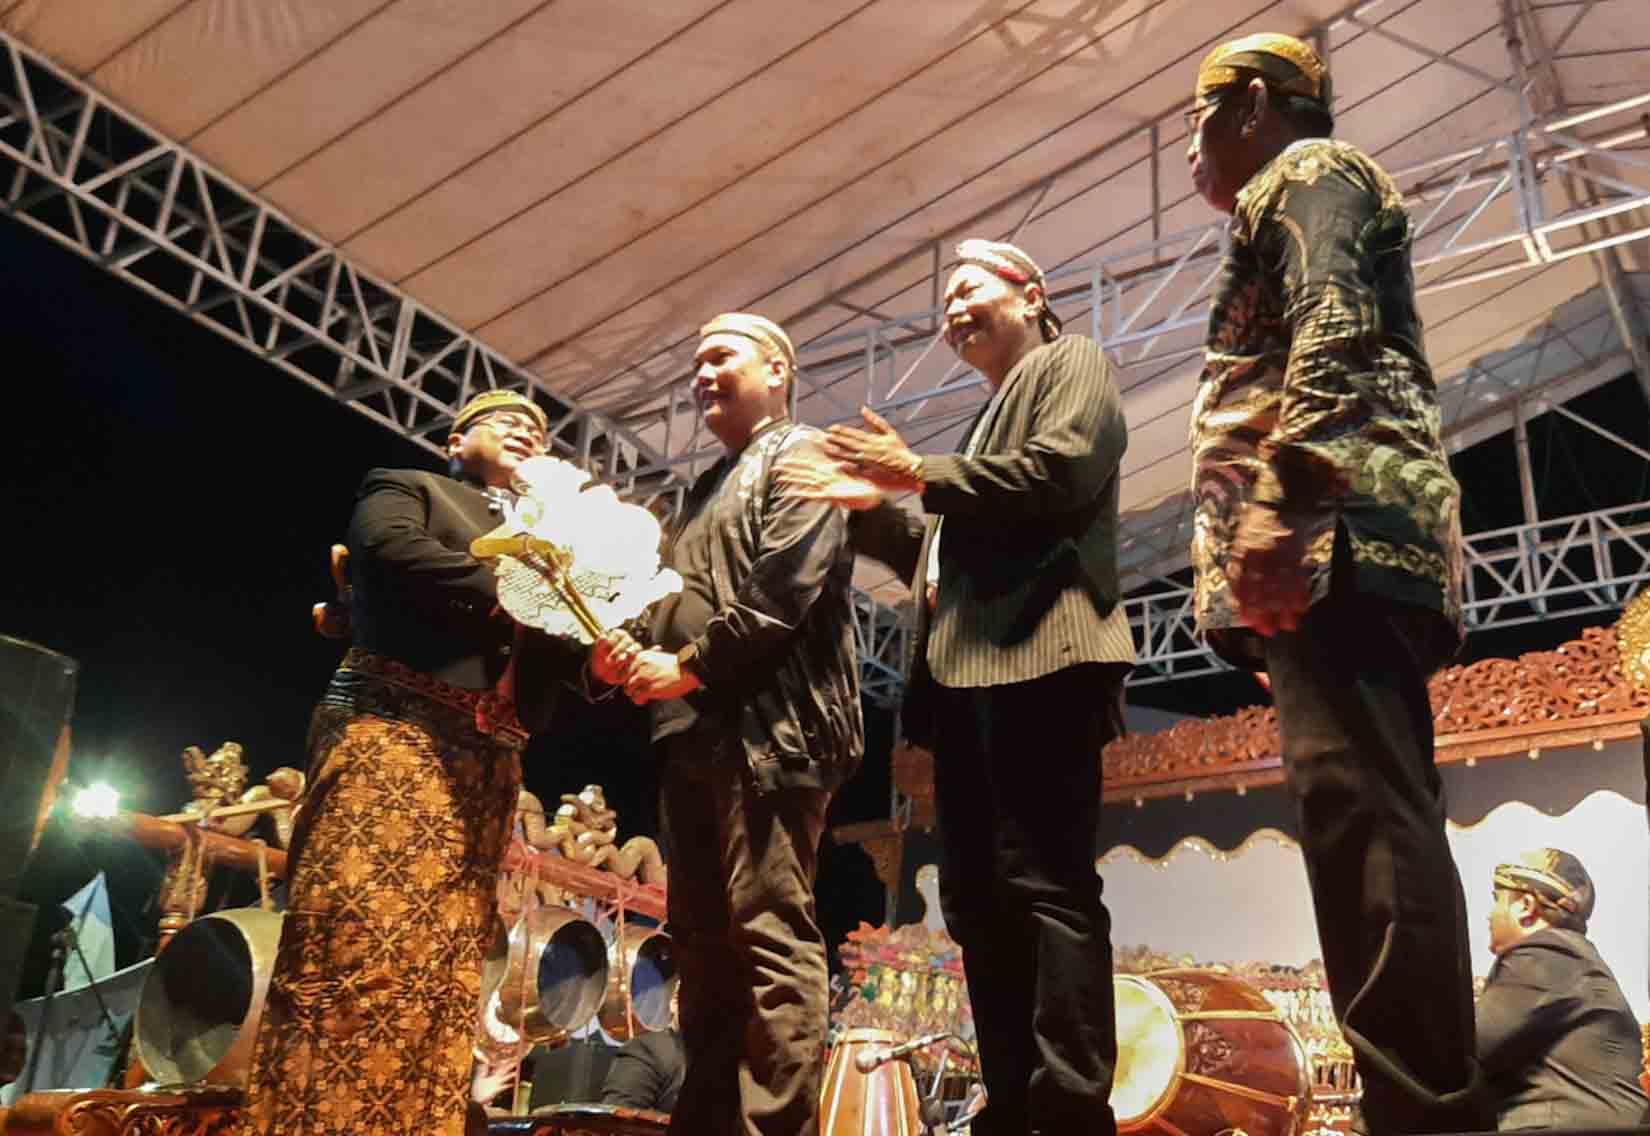 Walikota Banjarbaru Aditya Mufti Ariffin saat membuka pentas Wayang Kulit